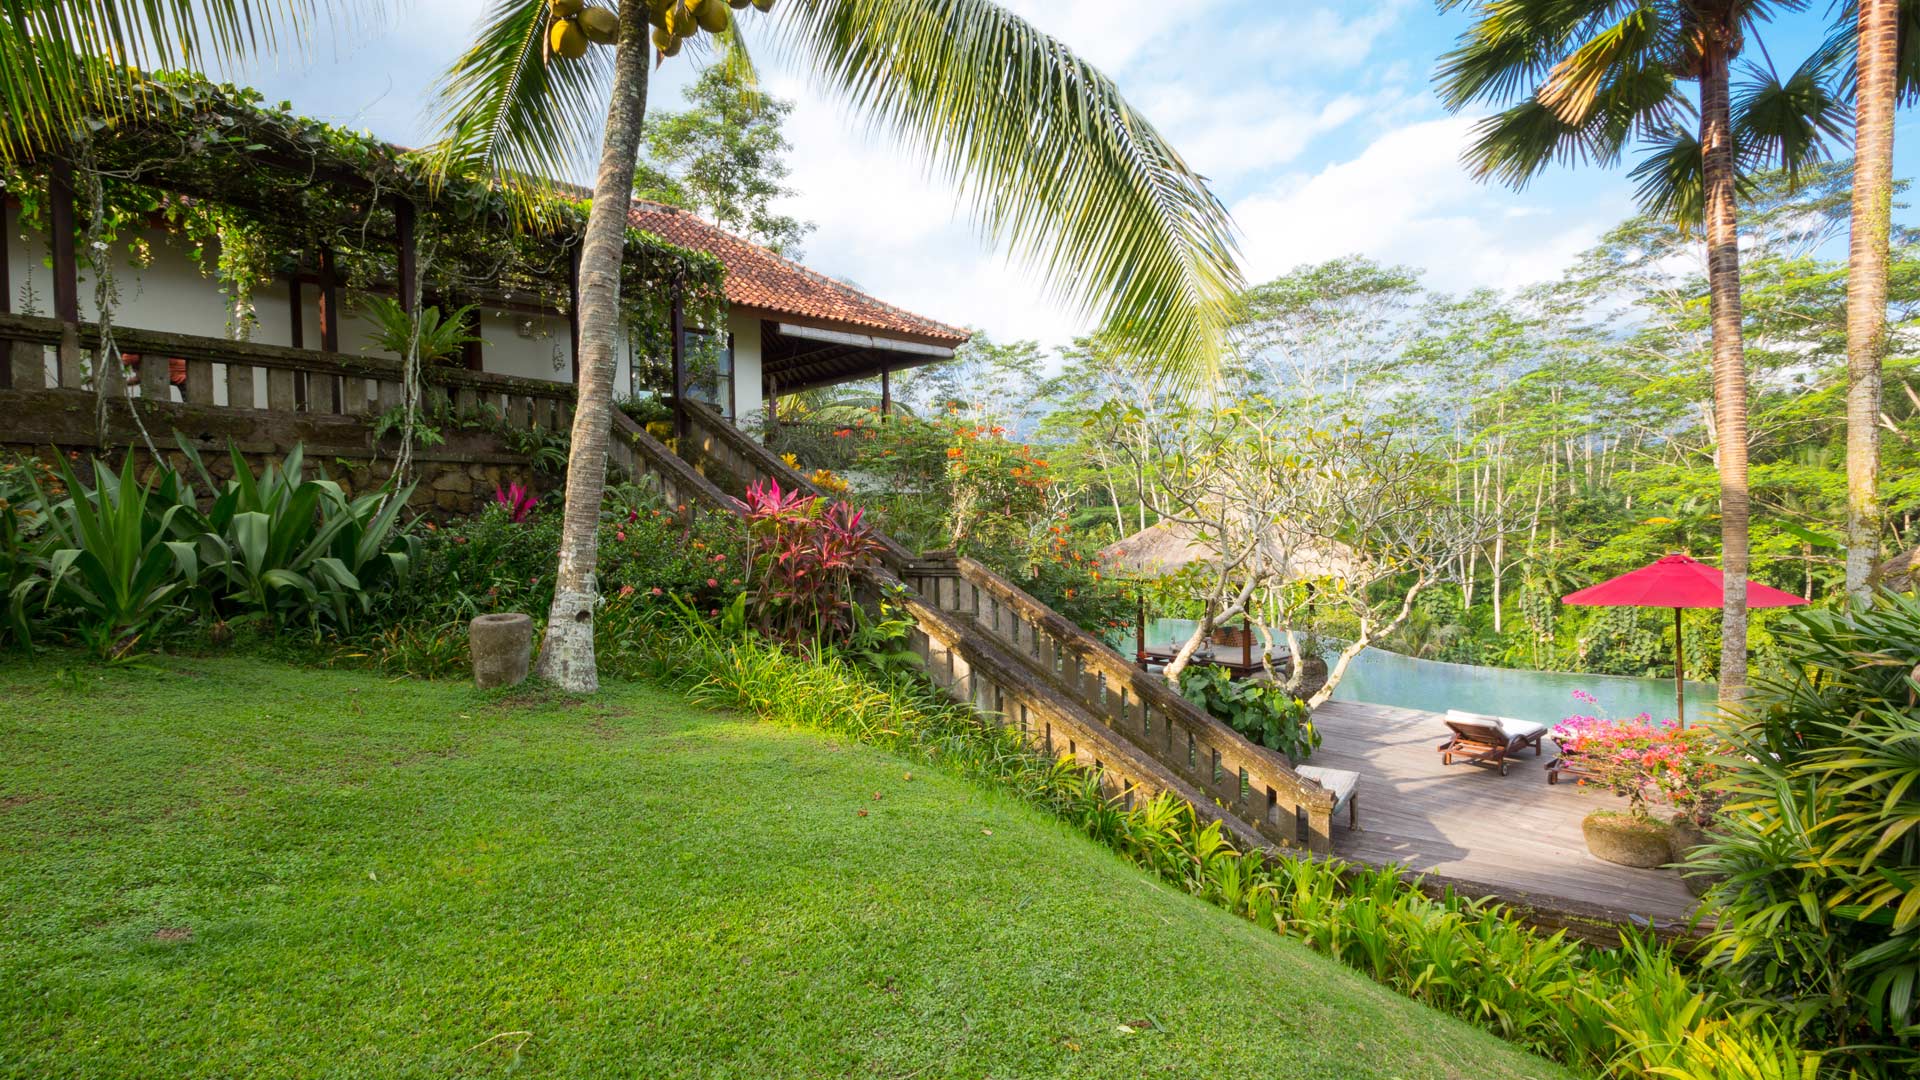  Location  de Villas  priv es  Bali  en Fran ais